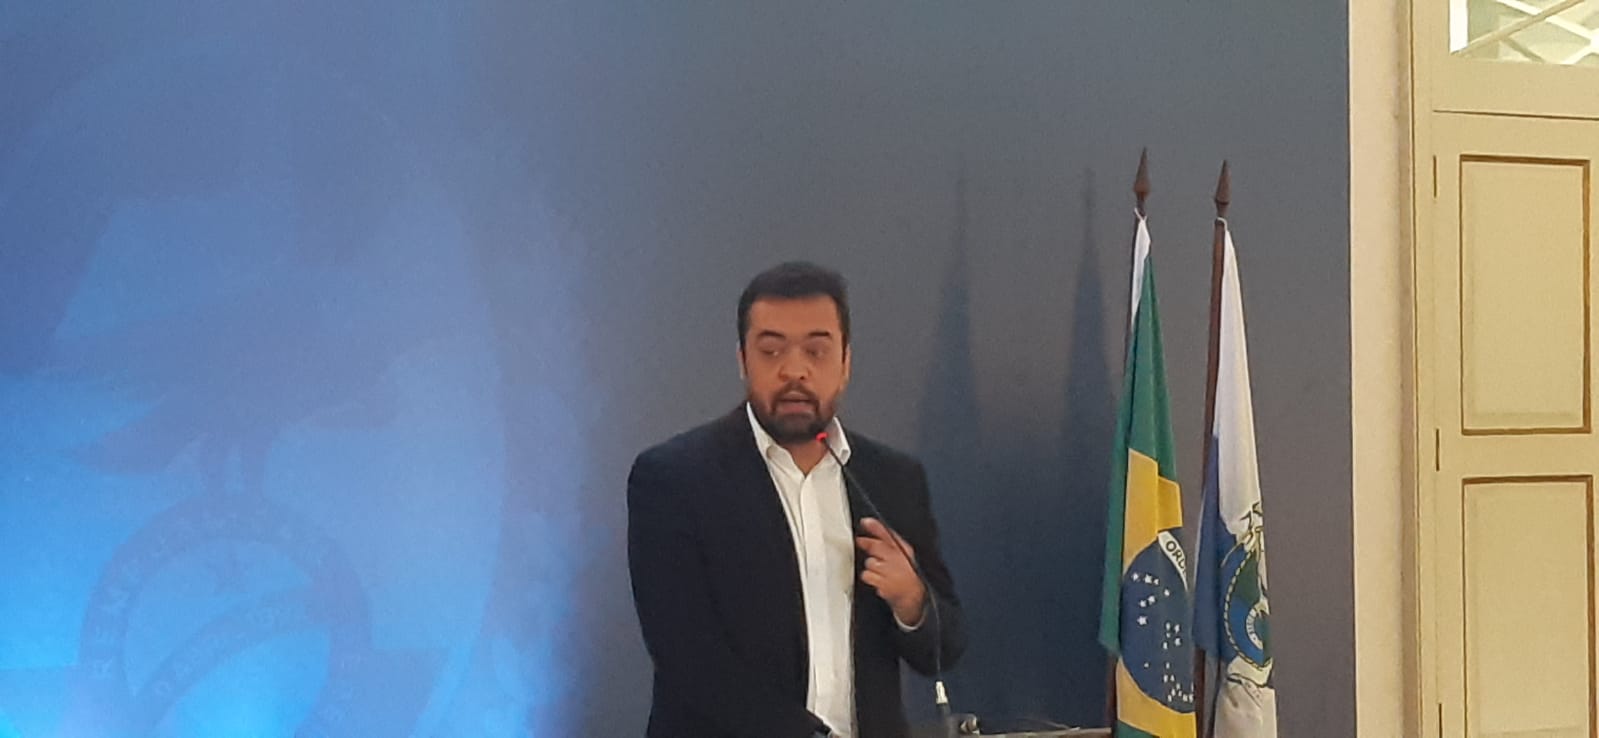 Imagem do governador Cláudio Castro no Palácio Guanabara